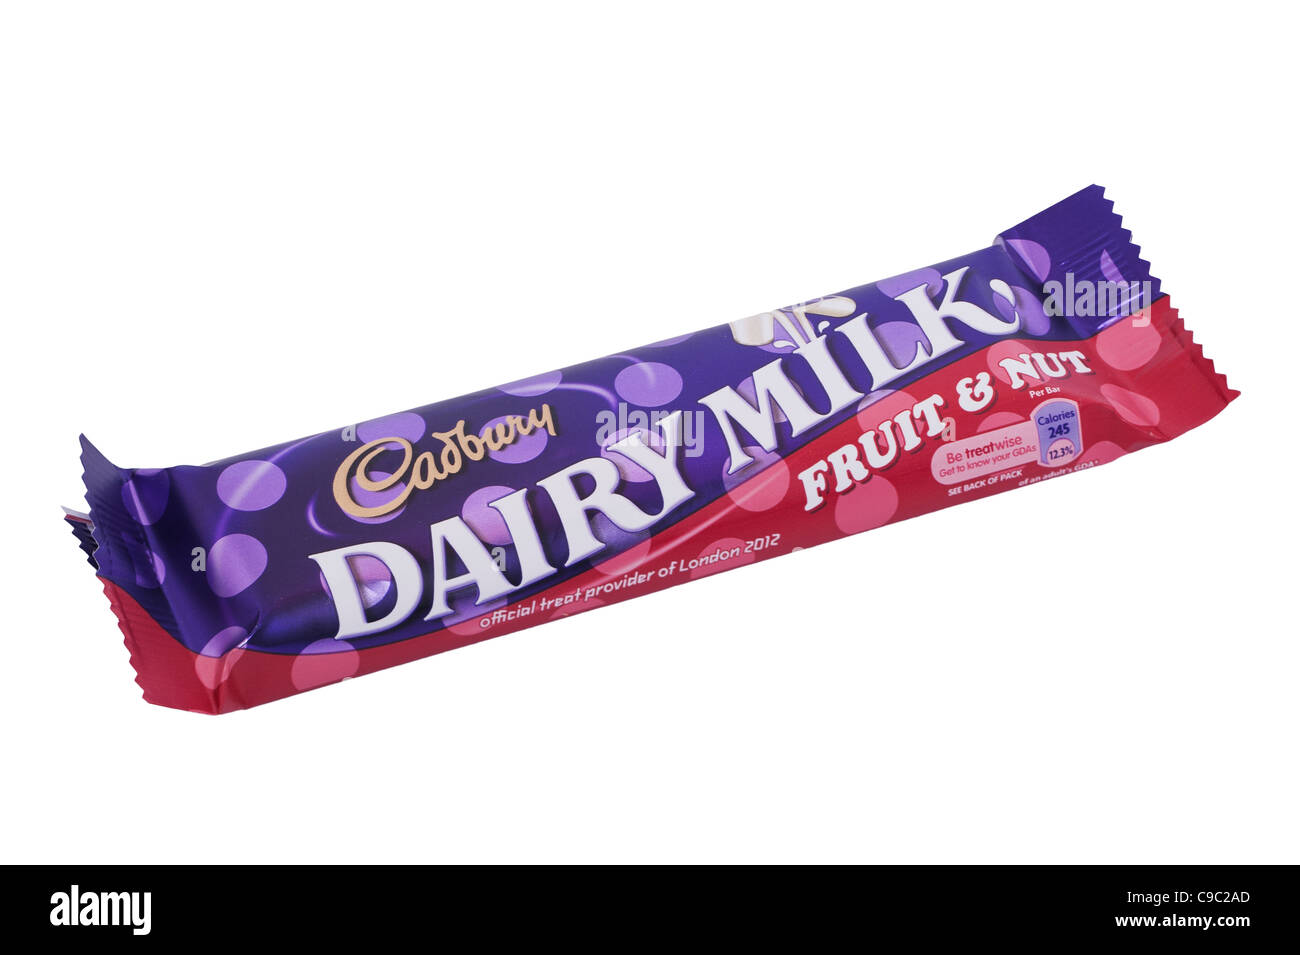 Un Cadbury Dairy Milk Fruit & Nut barre de chocolat sur un fond blanc Banque D'Images